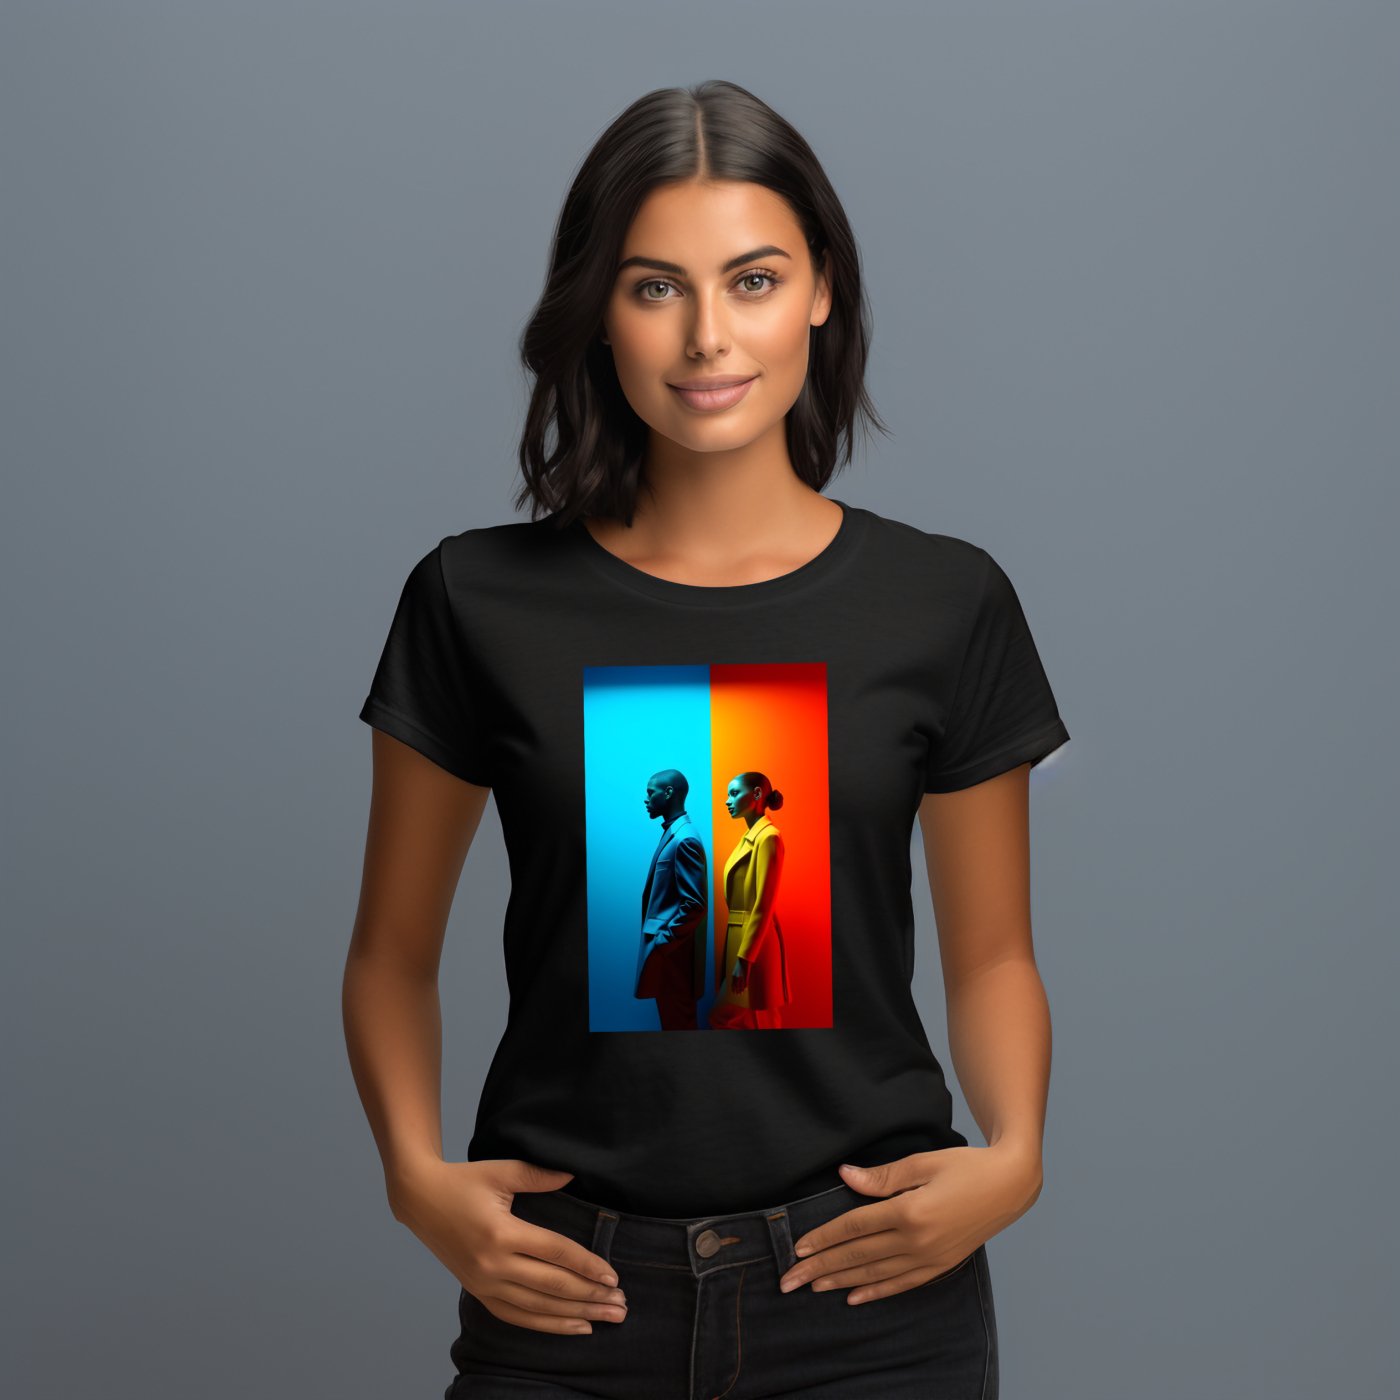 Moteris dėvinti "Unique Perceptions" marškinėlius iš Designedbyme.lt, simbolizuojantį lyčių įvairovę ir bendrą žmogaus patirtį, Moteriški marškinėliai, Visi produktai